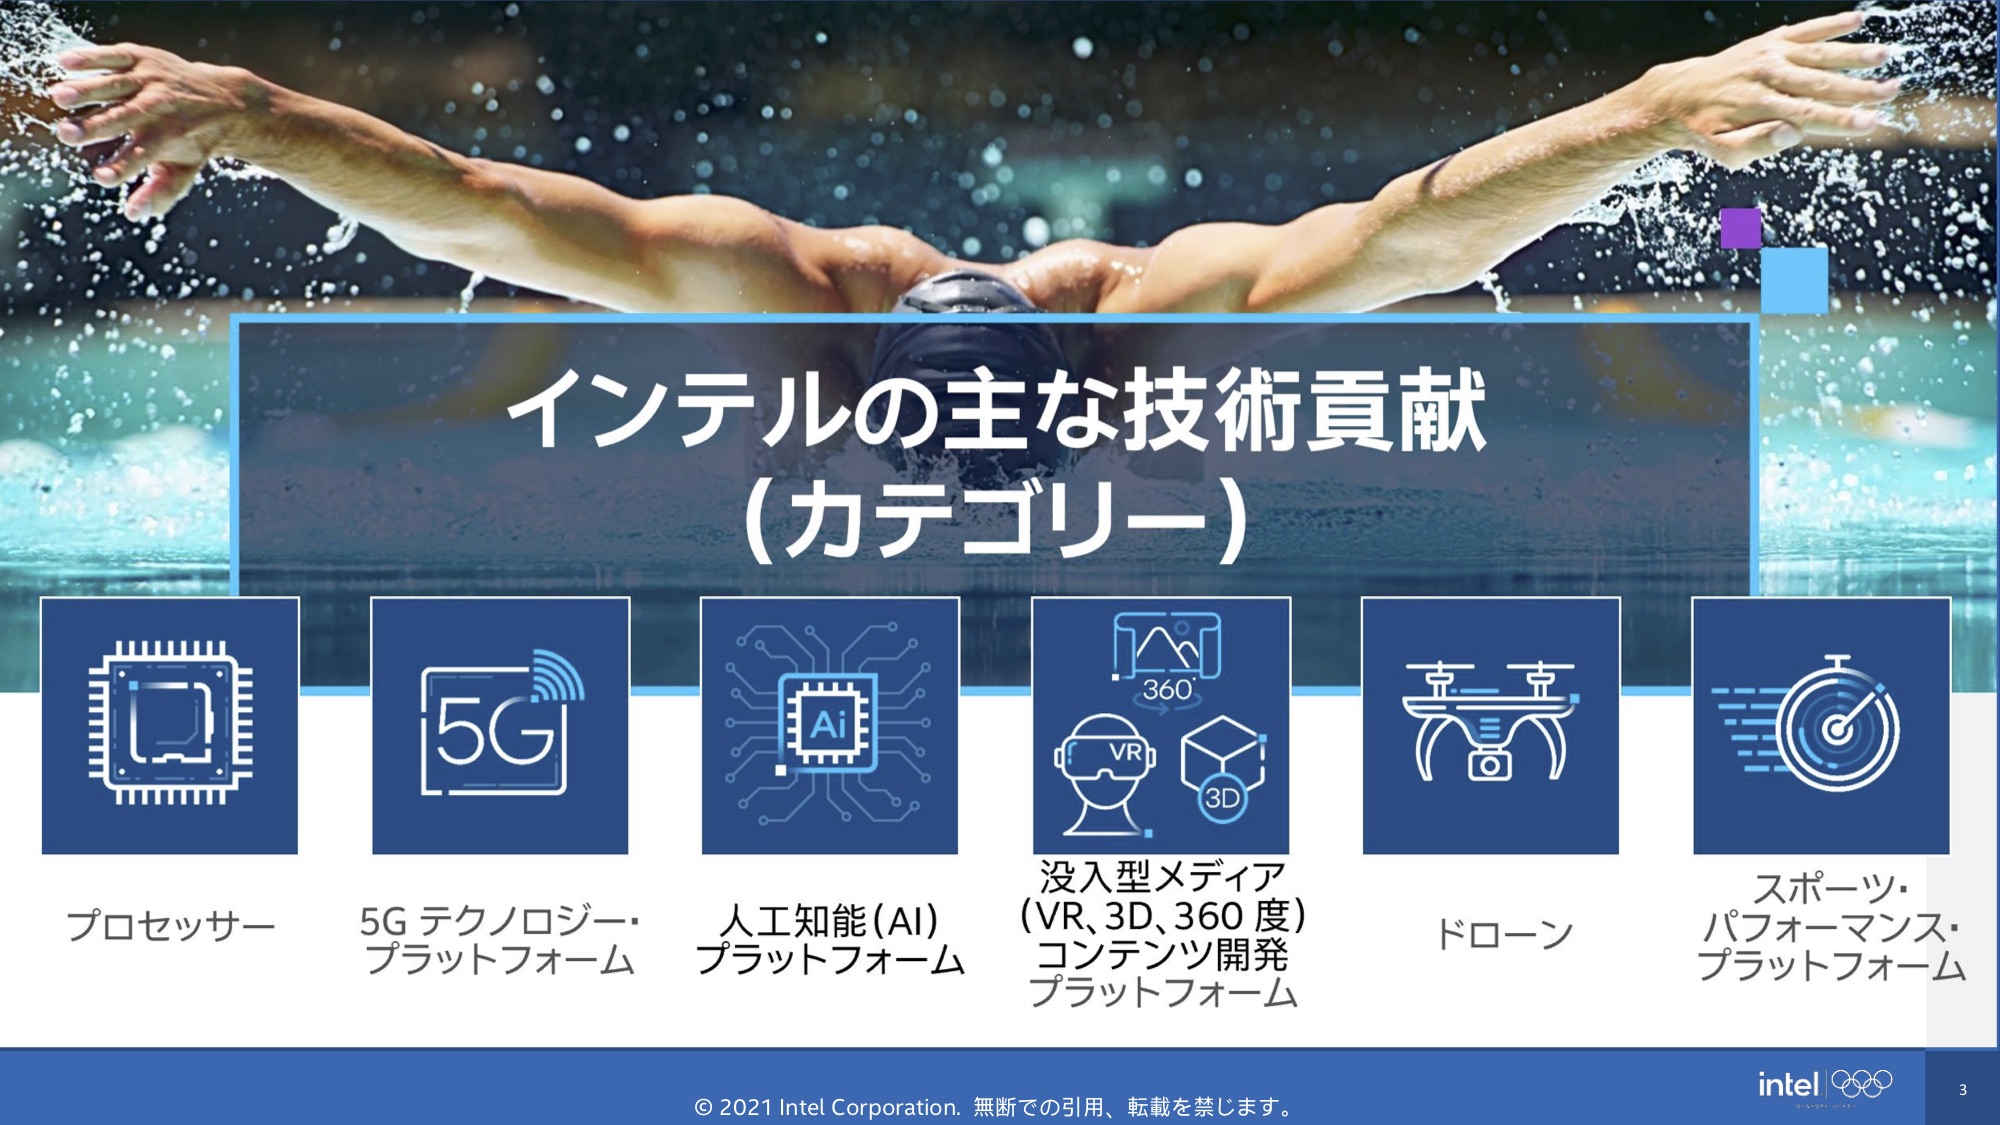 東京オリンピックに採用された Intel インテル の最新技術によるスポーツ観戦への取り組み Torso Jack Goo ニュース